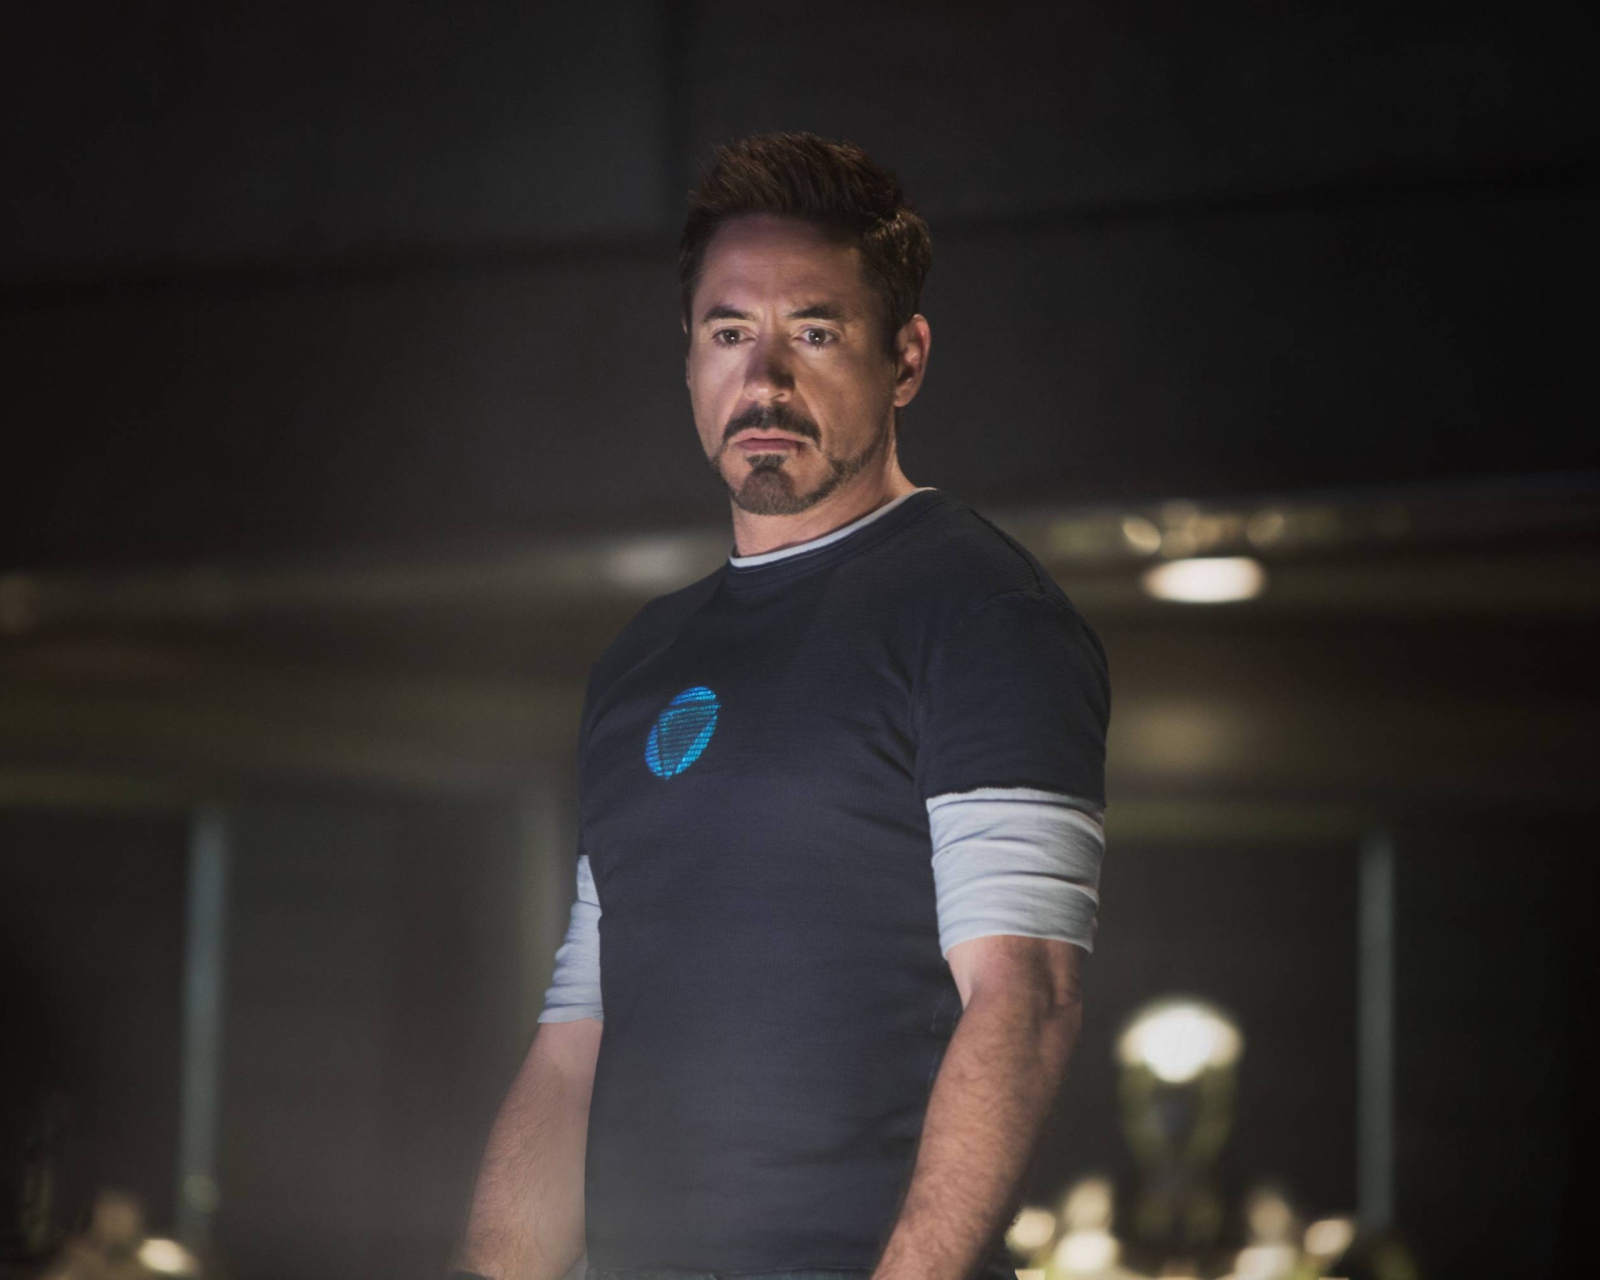 Robert Downey Jr As Iron Man 3 wallpaper 1600x1280